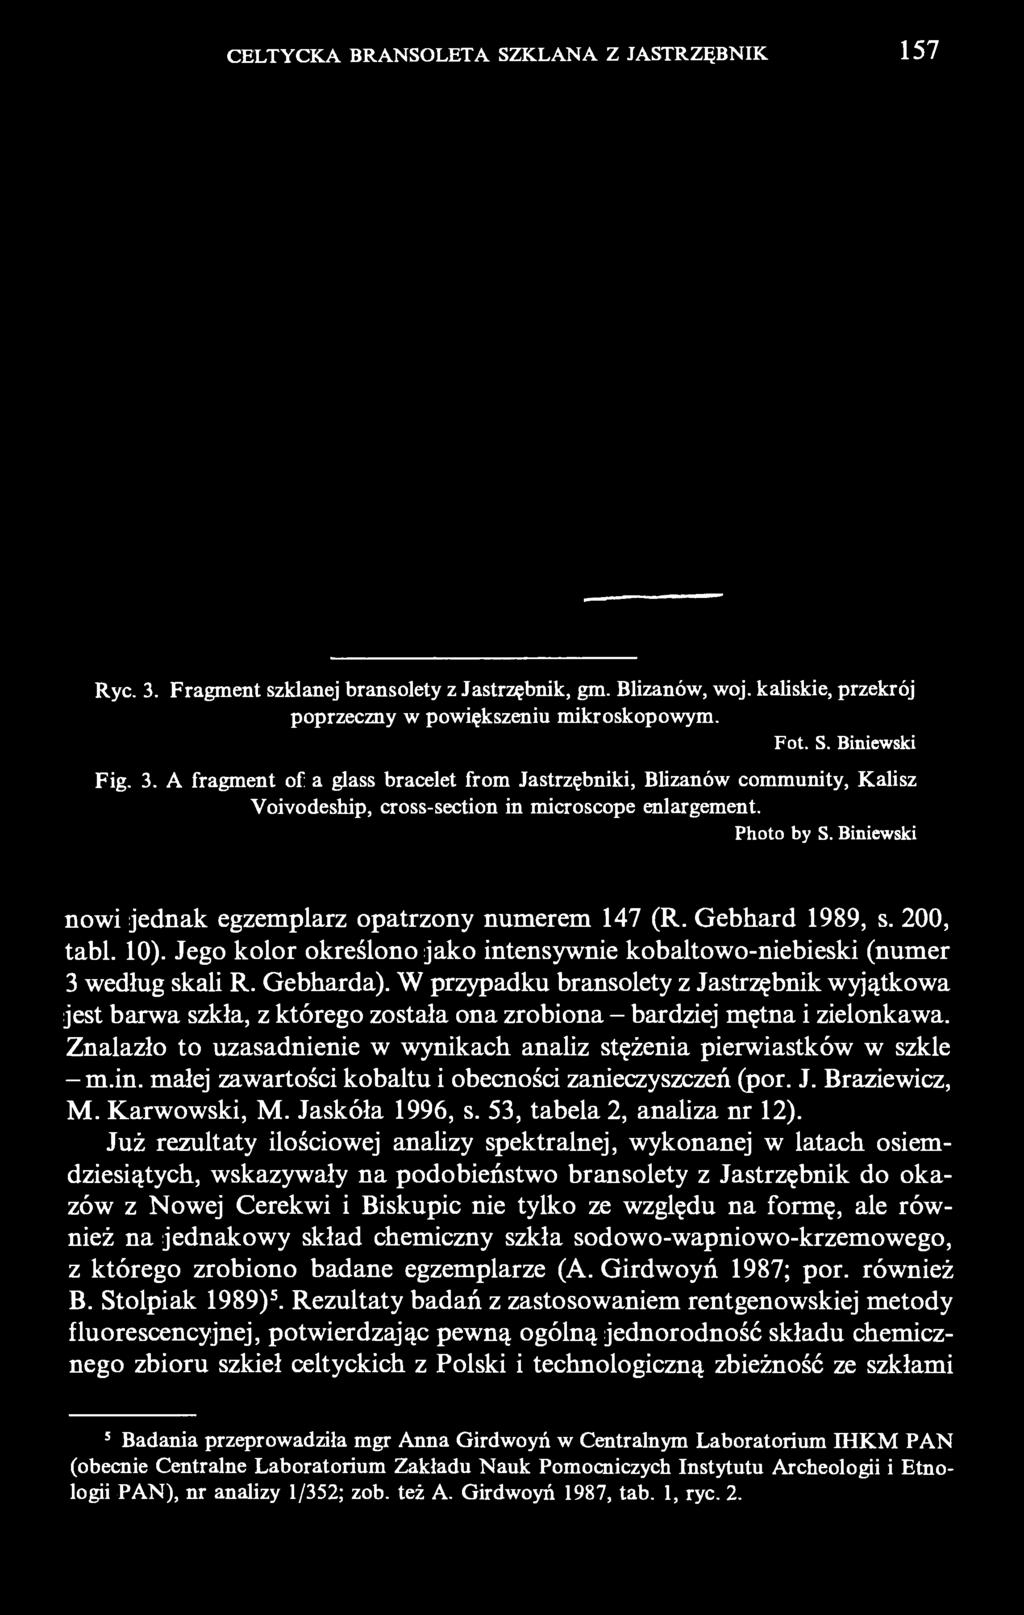 Biniewski nowi jednak egzemplarz opatrzony numerem 147 (R. Gebhard 1989, s. 200, tabl. 10). Jego kolor określono jako intensywnie kobaltowo-niebieski (numer 3 według skali R. Gebharda).